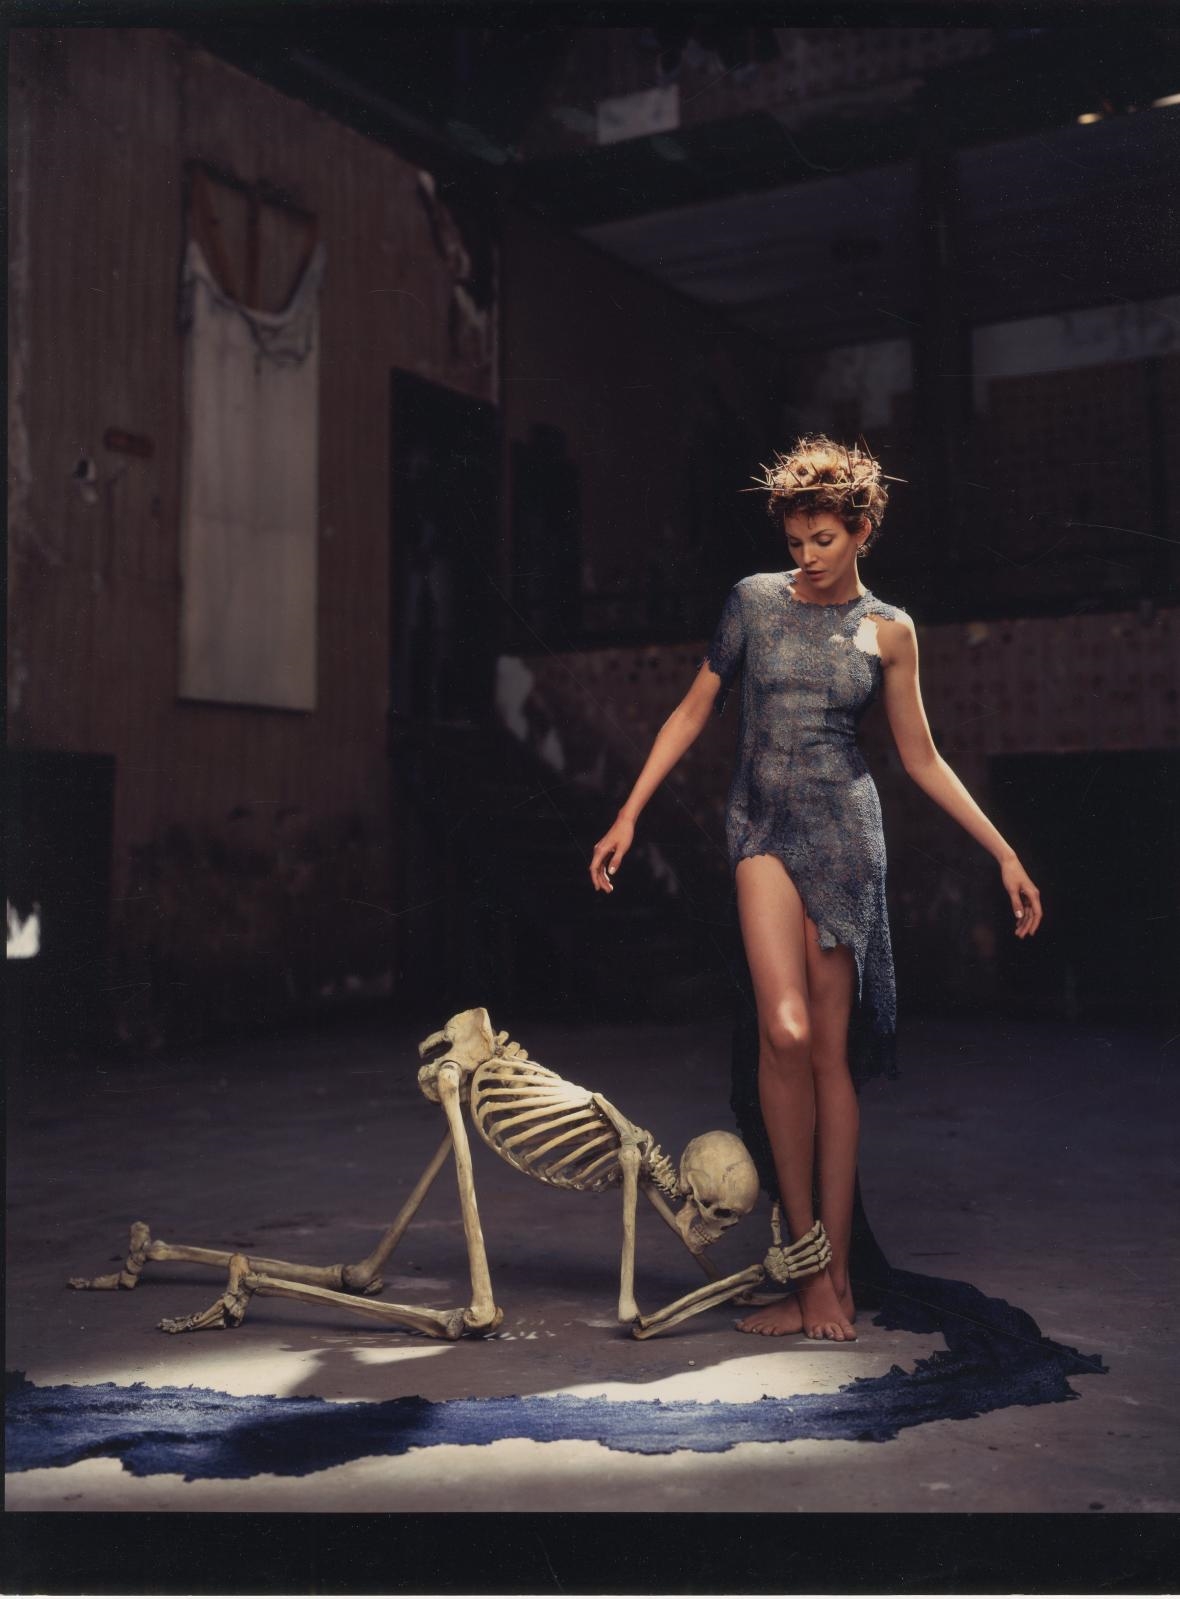 Mode : squelette se prosternant au pied d'un modèle coiffé d'une couronne d'épine by Jean Paul Goude, circa 1990 - 2000